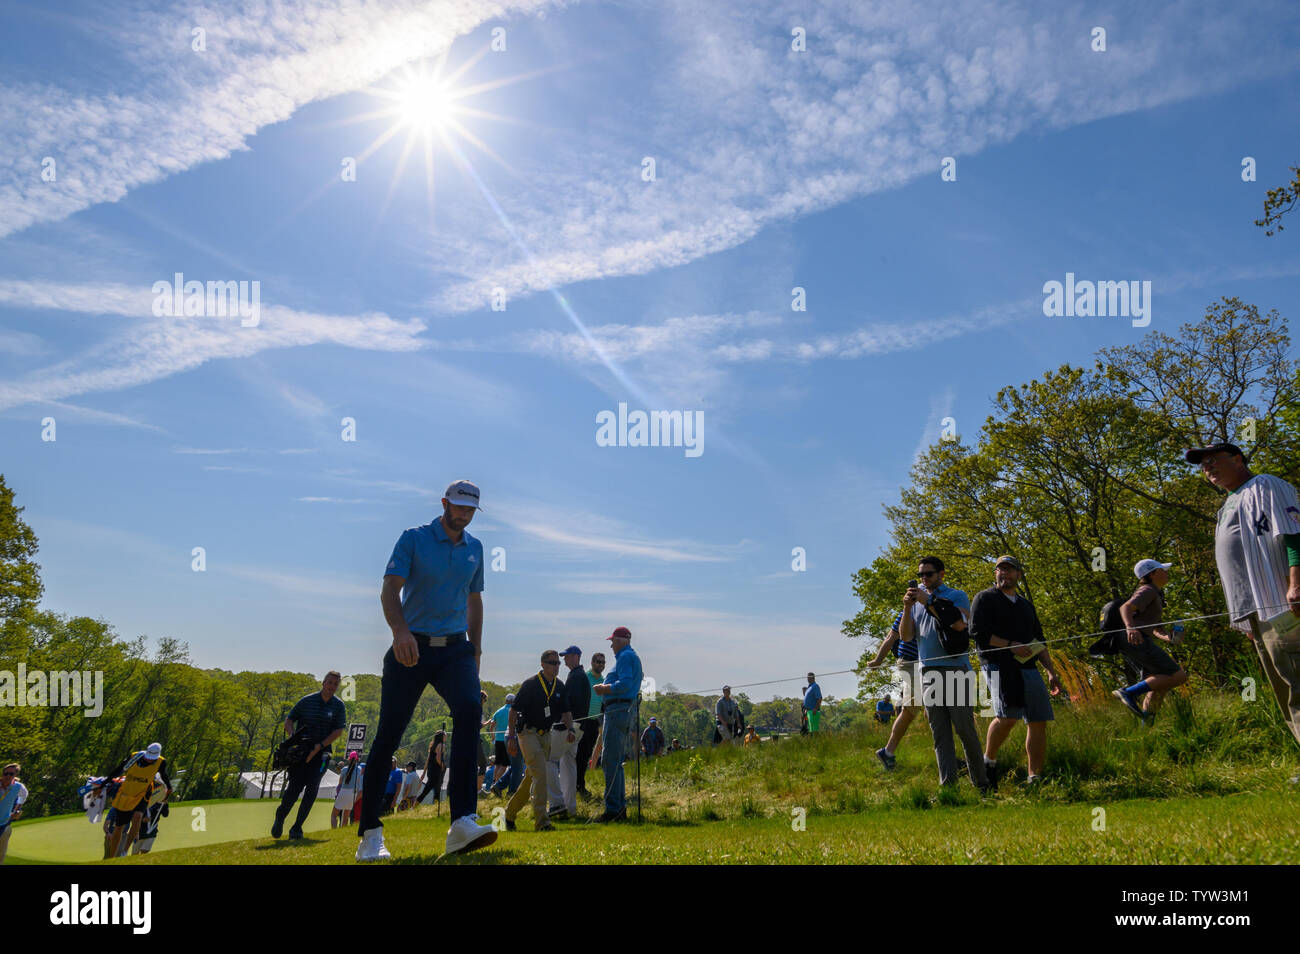 Dustin Johnson passeggiate alla 16 durante il secondo round al campionato di PGA presso il corso di Nero a Bethpage State Park di Farmingdale, New York, 17 maggio 2019. Foto di Corey Sipkin/UPI Foto Stock